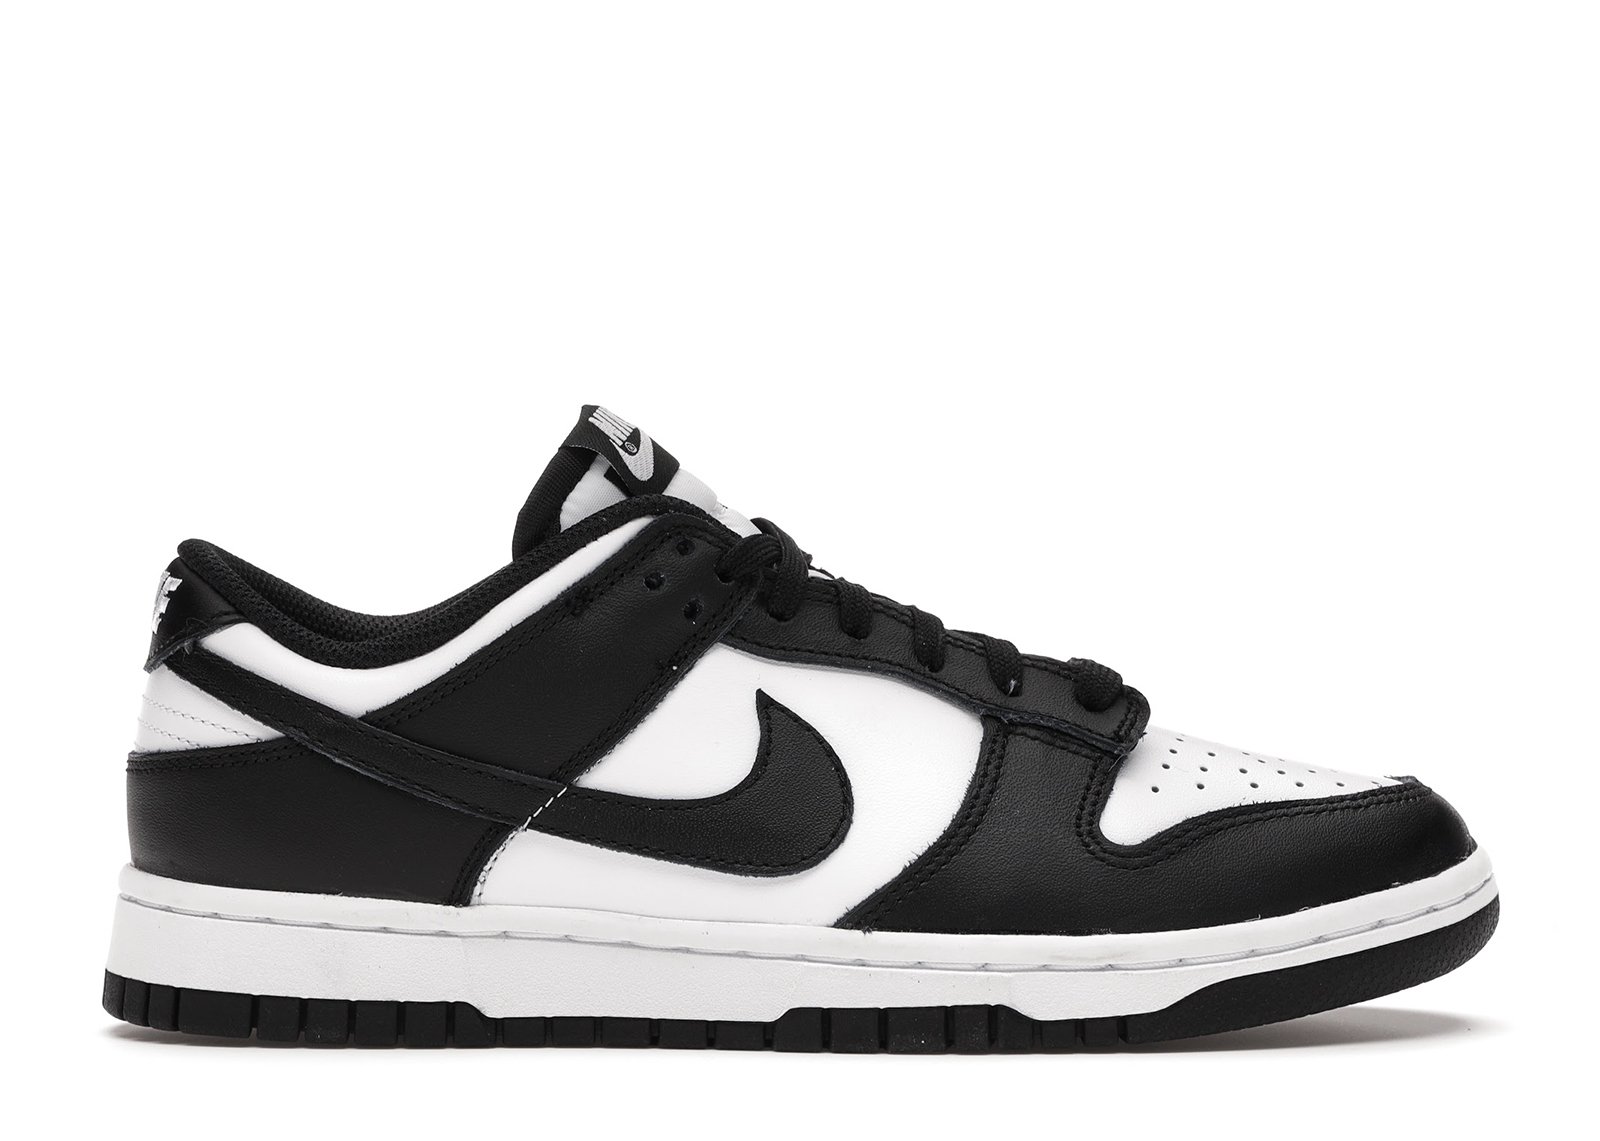 Nike Dunk Low Retro White Black Panda (2021) (W) sneakers